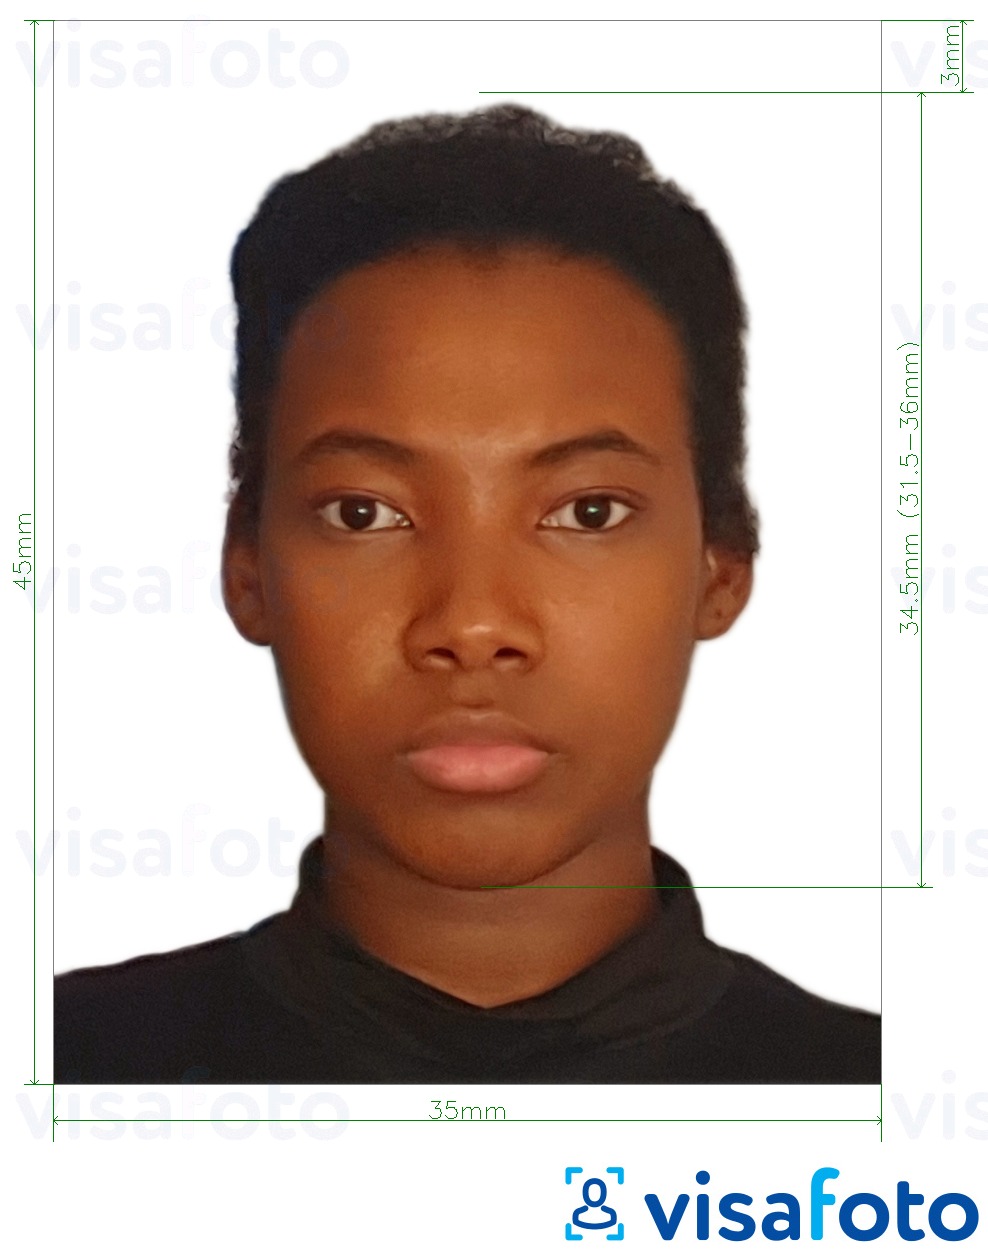 Contoh foto untuk Visa Burkina Faso 4.5x3.5 cm (45x35 mm) dengan spesifikasi saiz yang tepat.